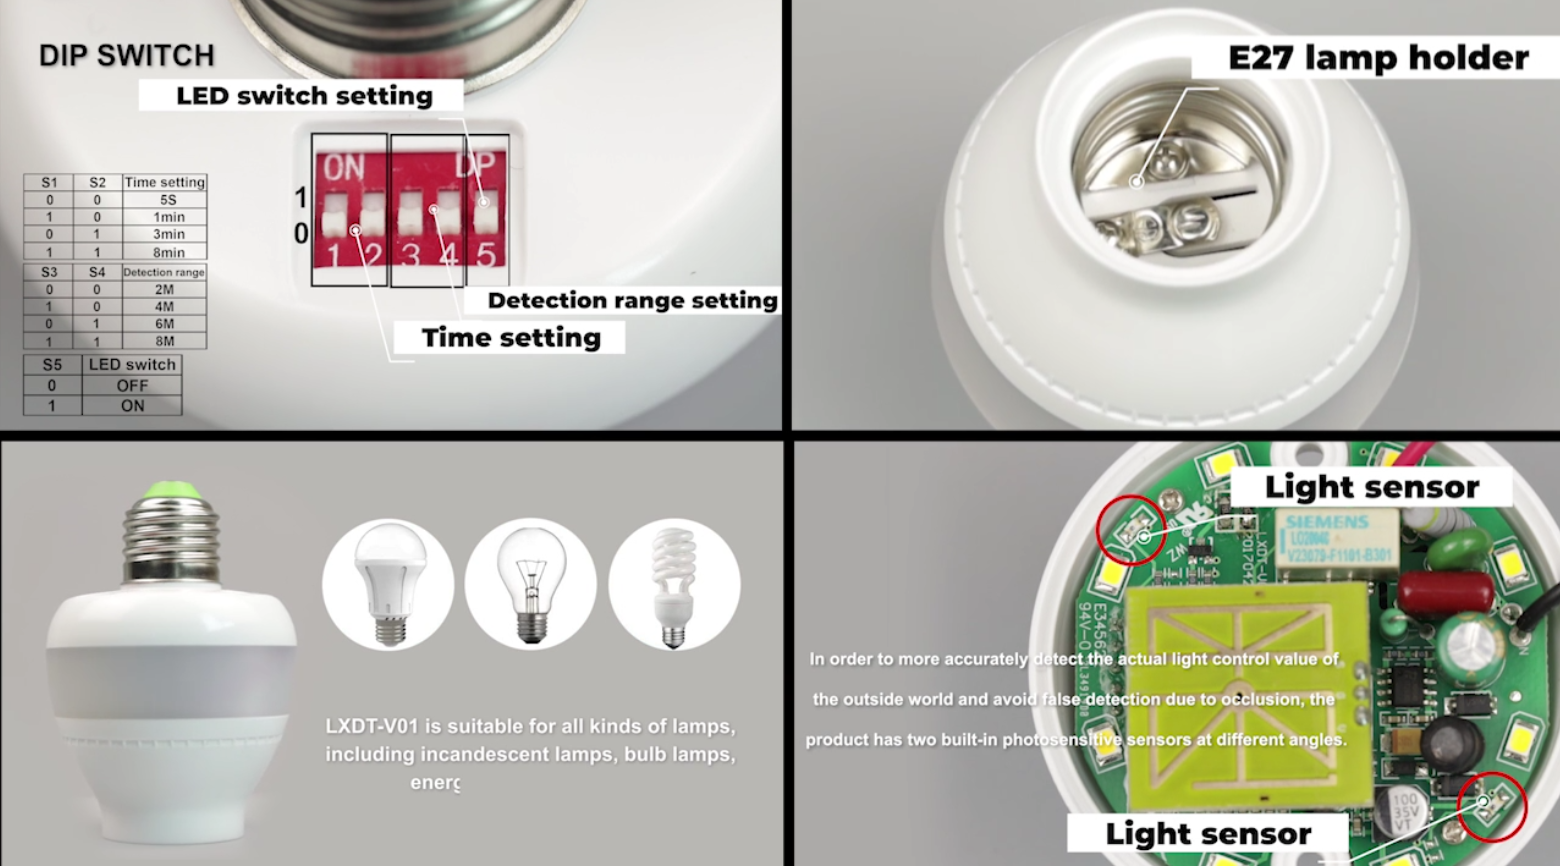 Интелигентен държач за микровълнова индукционна лампа, иновативен дизайн води бъдещето на осветлението